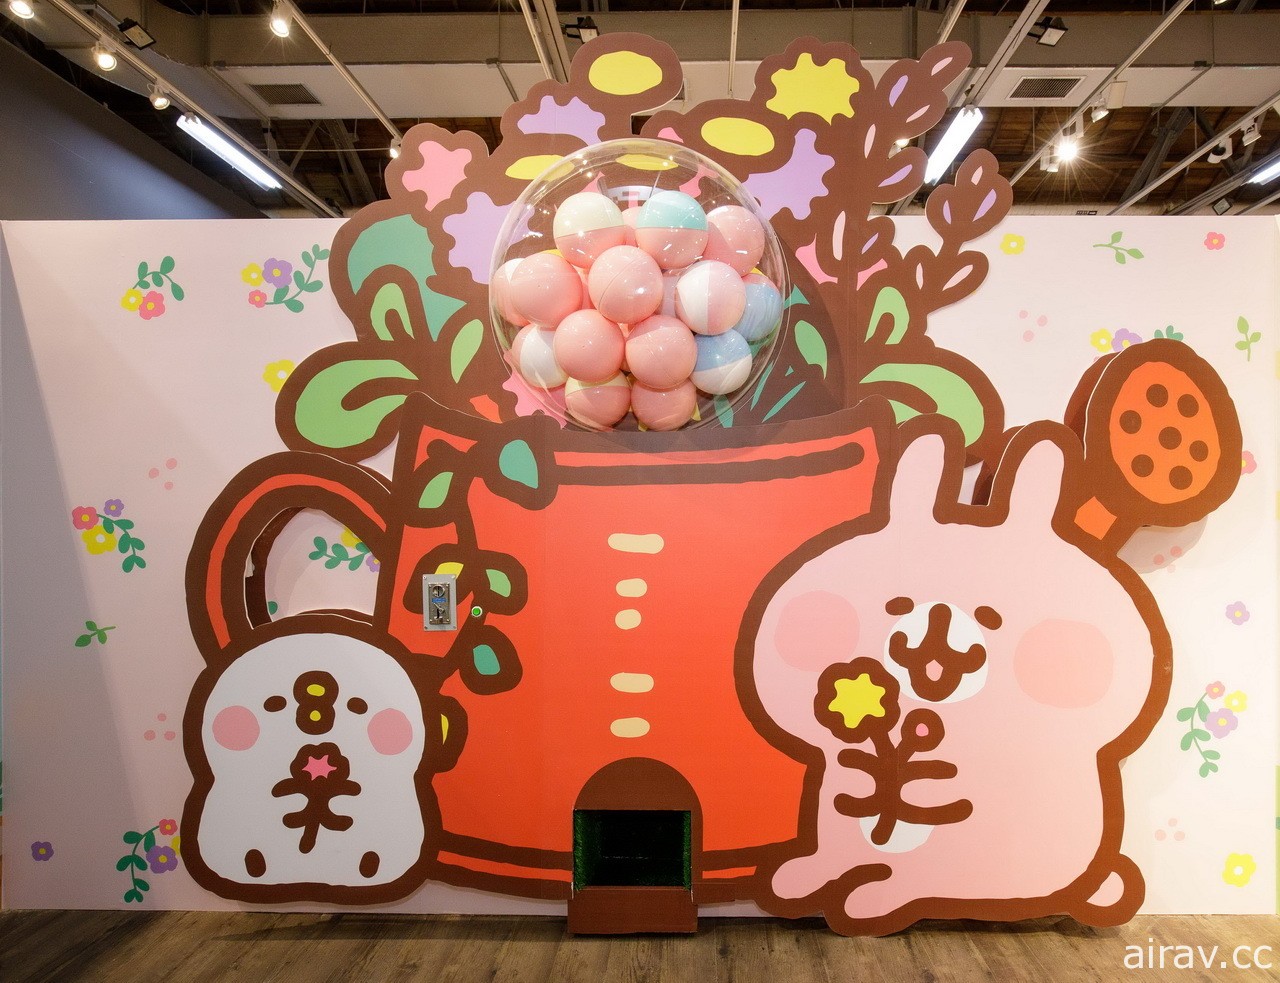 「卡娜赫拉的小動物」小農系列主題店於高雄、台北正式開幕